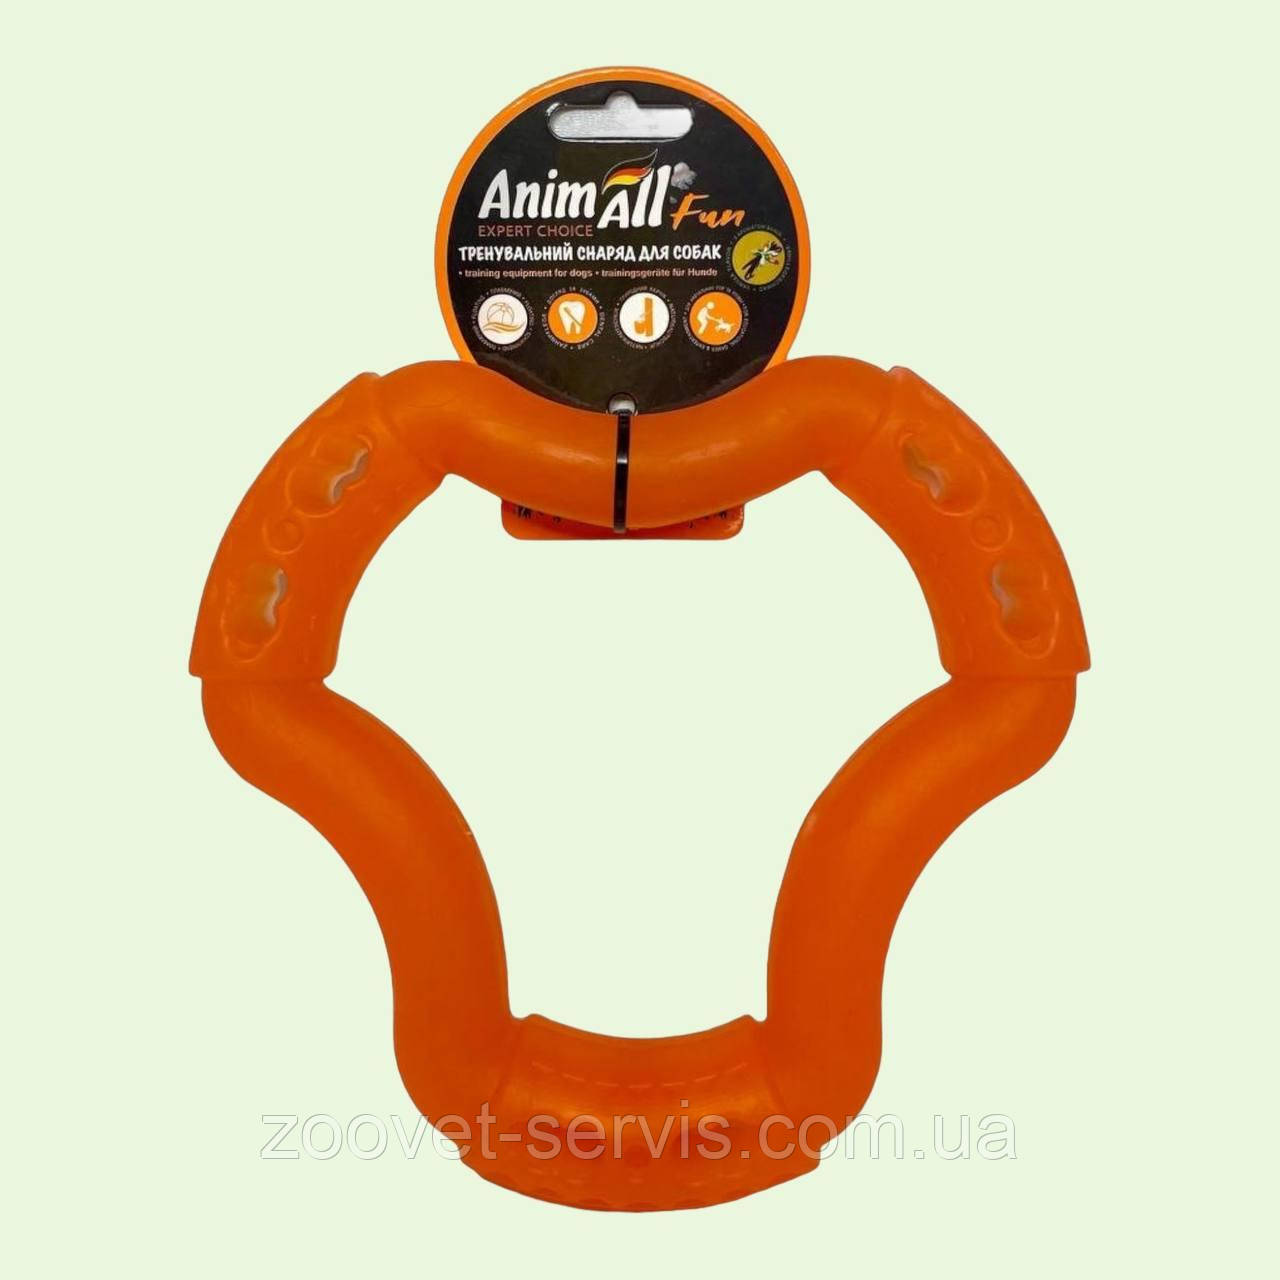 AnimAll (ЕнімАлл) Fun - Іграшка кільце 6 боків для собак 88202 12см помаранчевий